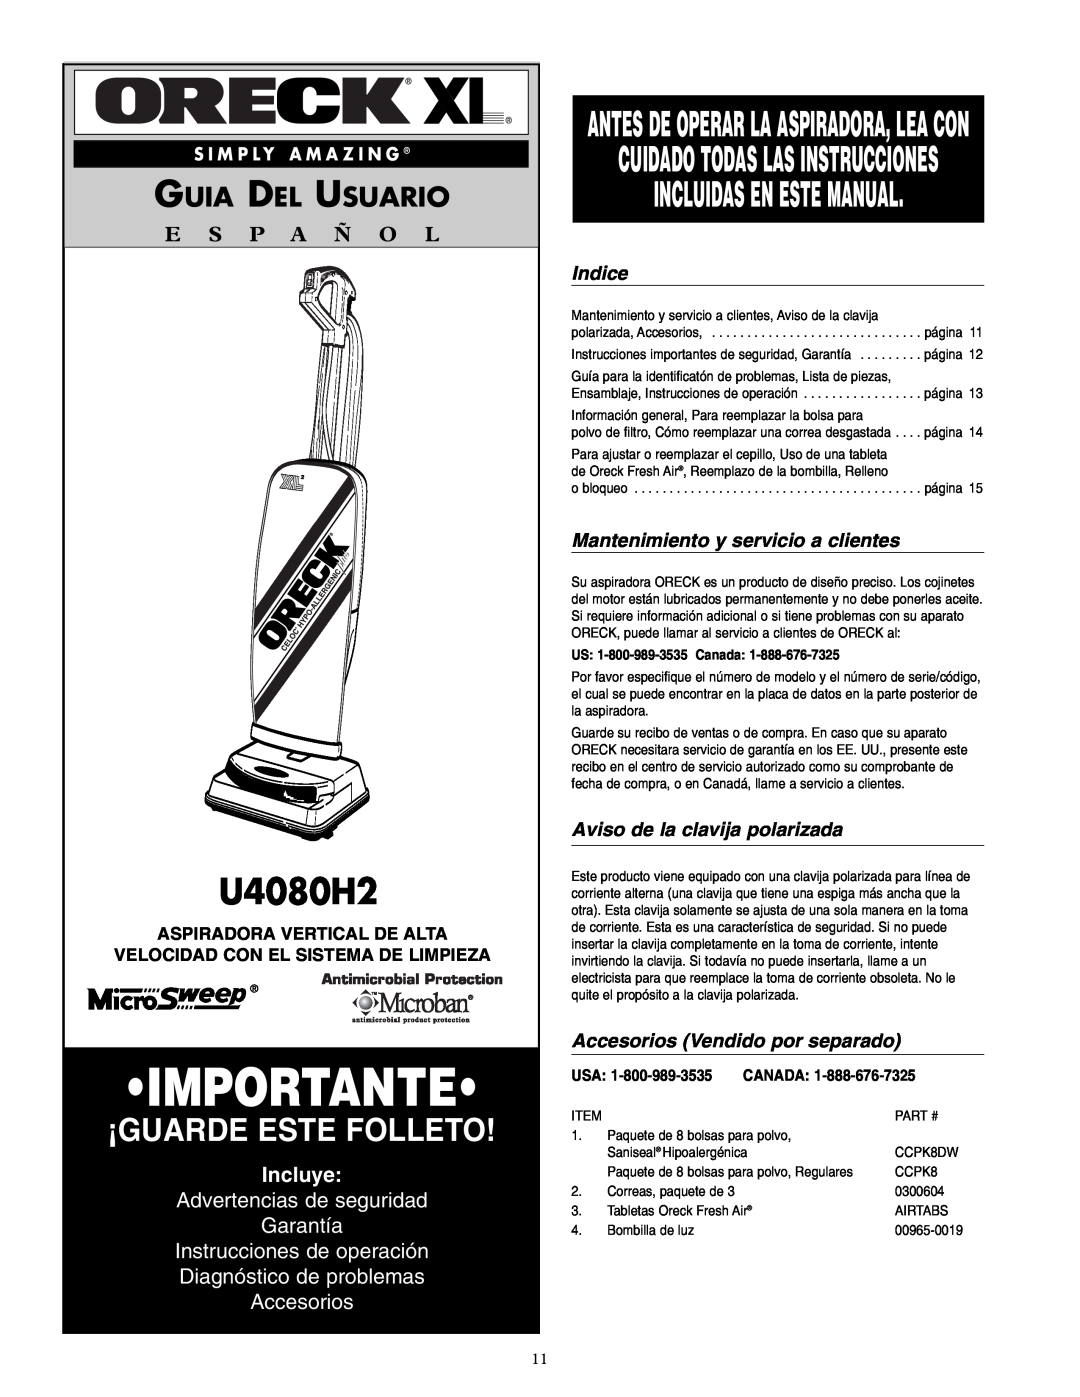 Oreck U4080H2 Incluidas En Este Manual, Guia Del Usuario, E S P A Ñ O L, Incluye, Advertencias de seguridad Garantía 